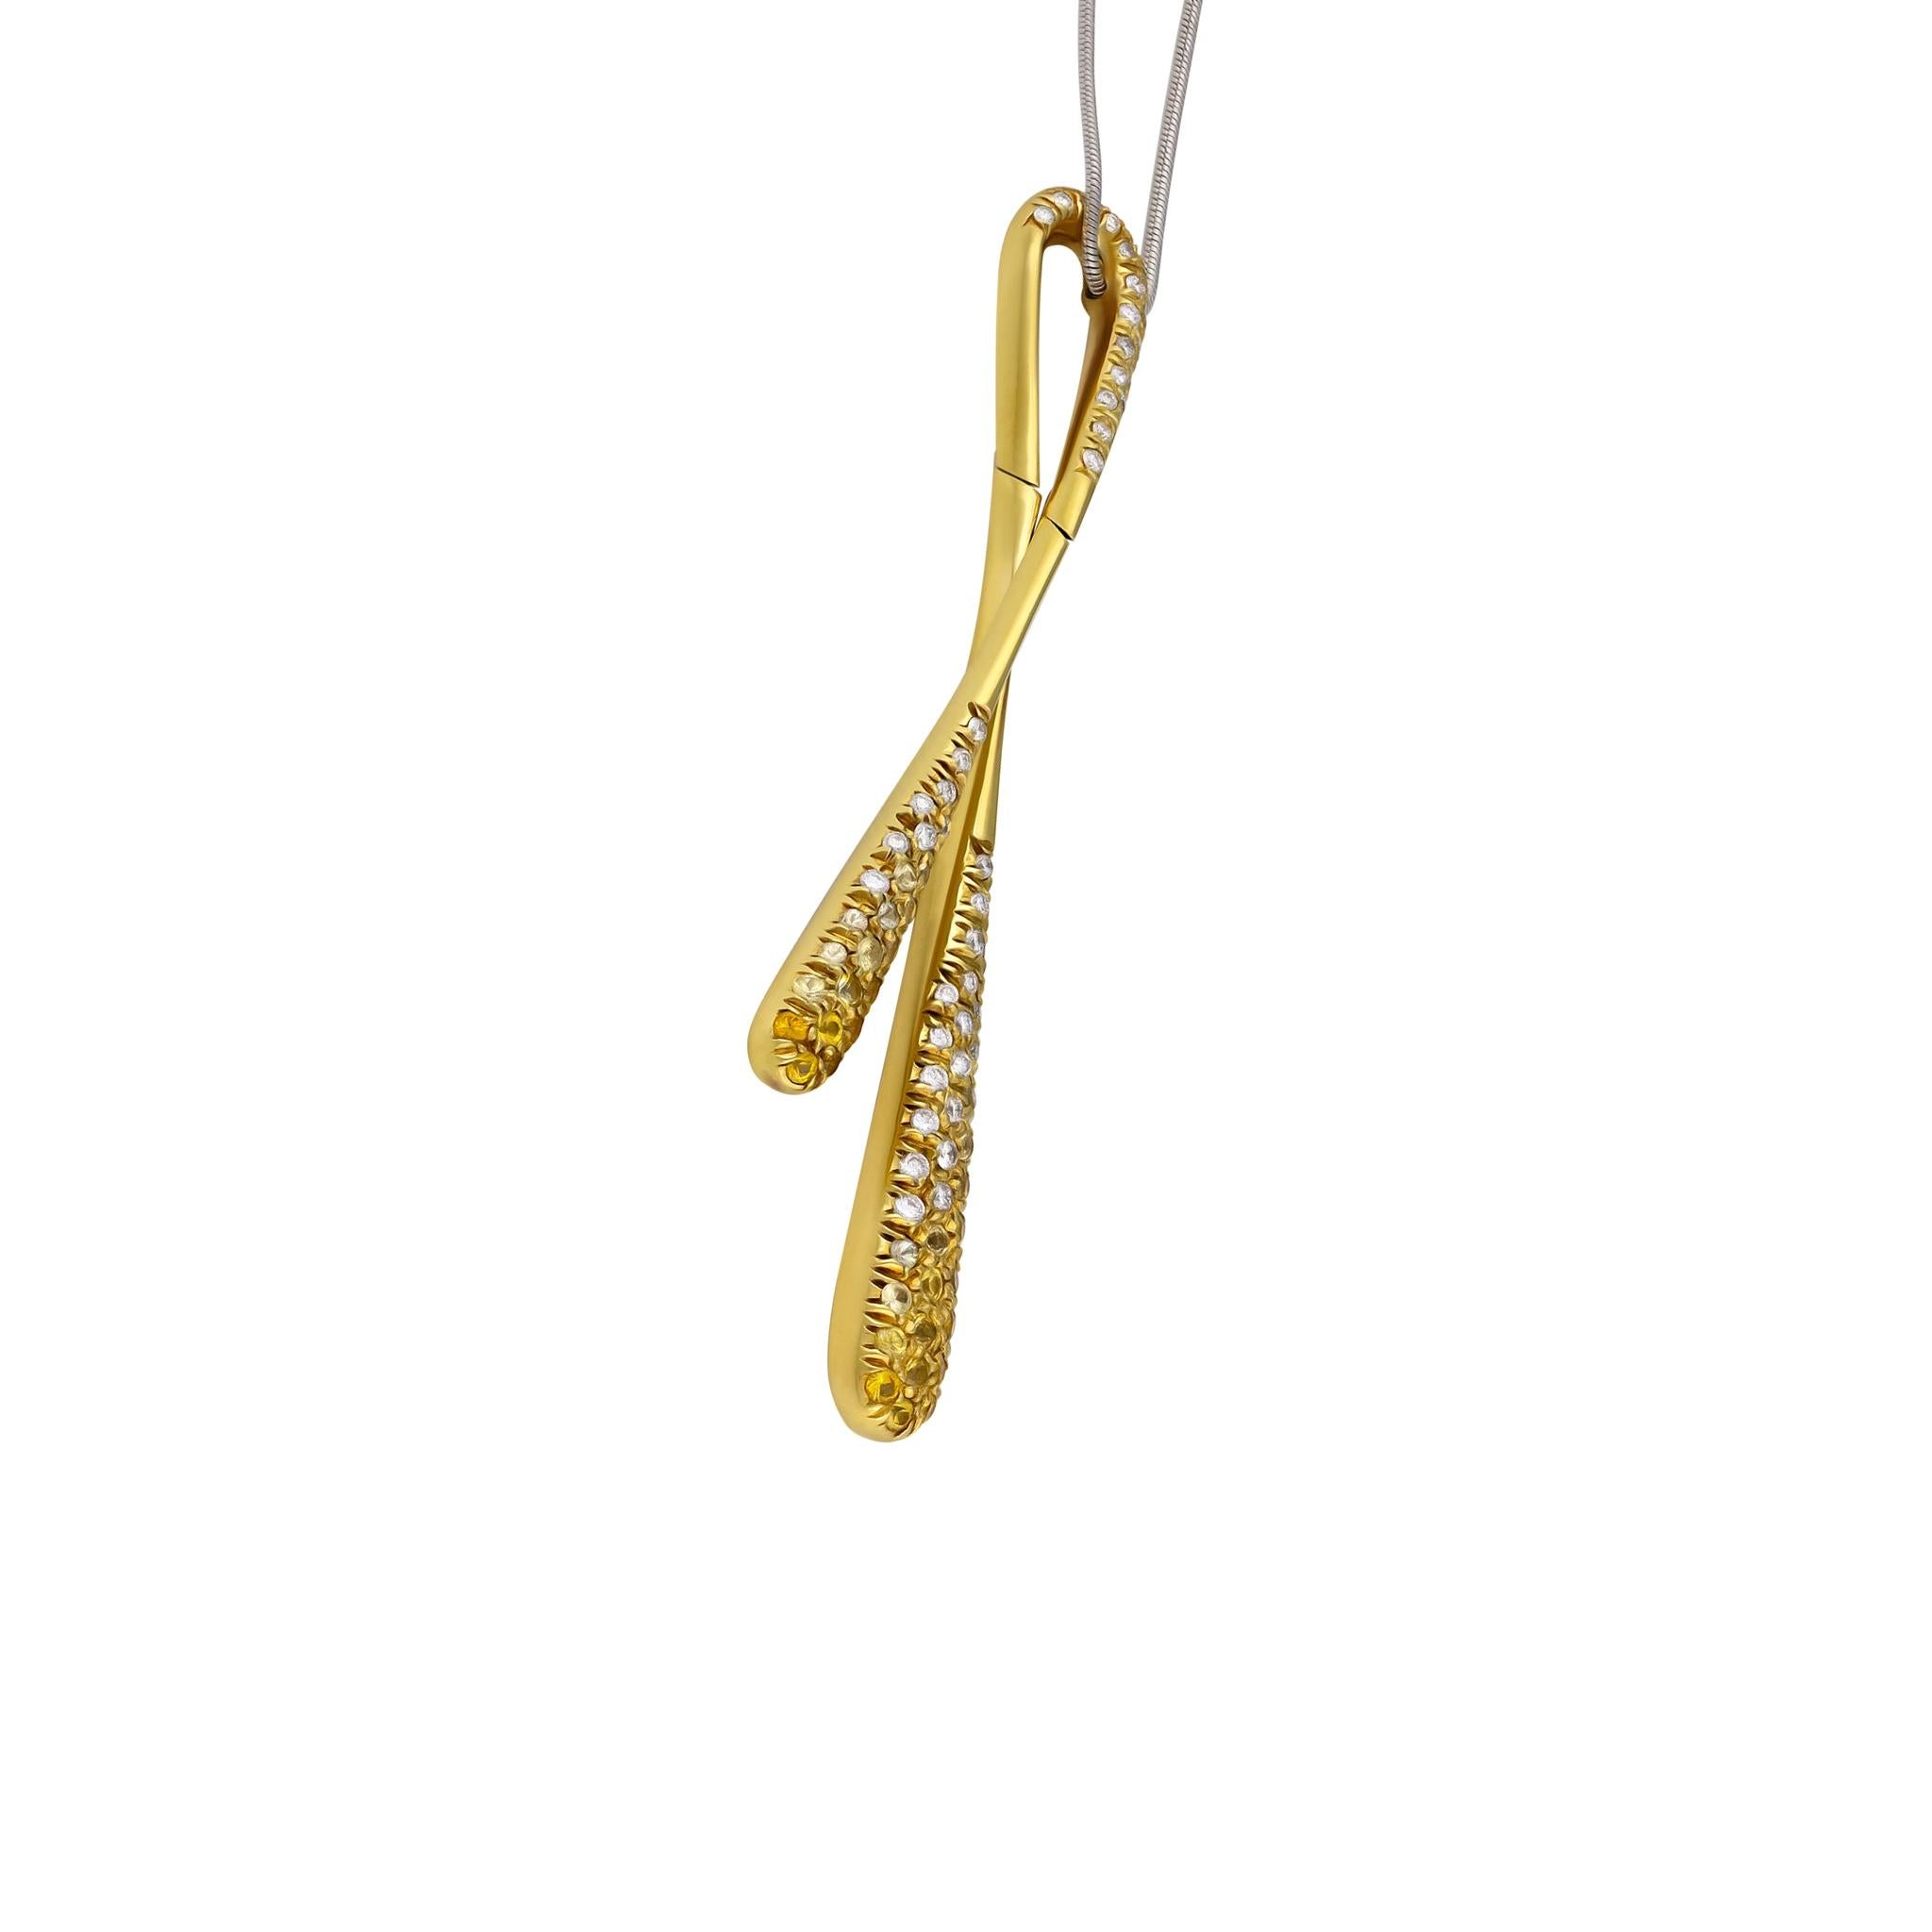 Stefan Hafner Anhänger Halskette
18K Weißgold
Diamanten: 0,43ctw
Saphir: 0.88ctw
Einzelhandelspreis: $8.150,00
SKU: BLU01493